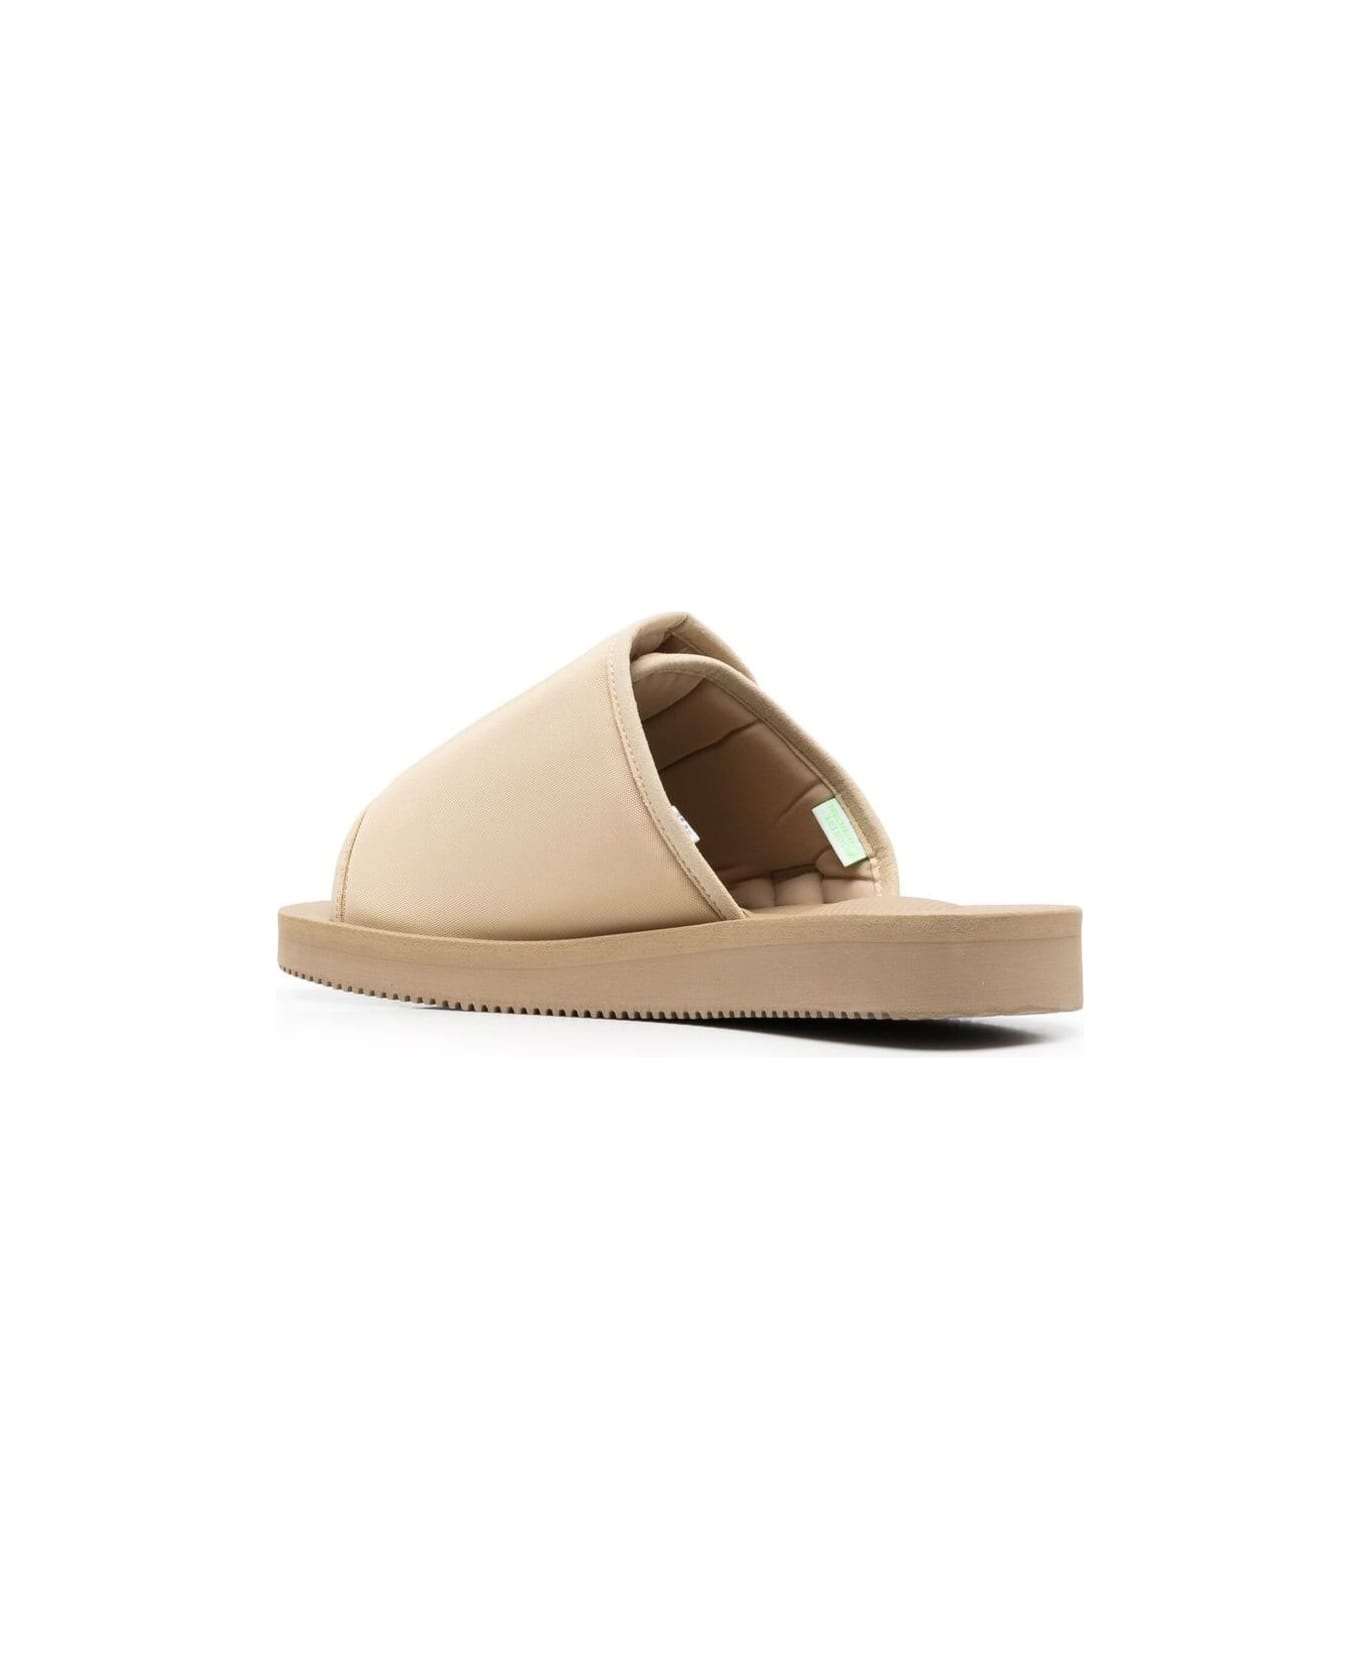 SUICOKE 'kaw-cab' Beige Sandals With Velcro Fastening In Nylon Woman Suicoke - Beige